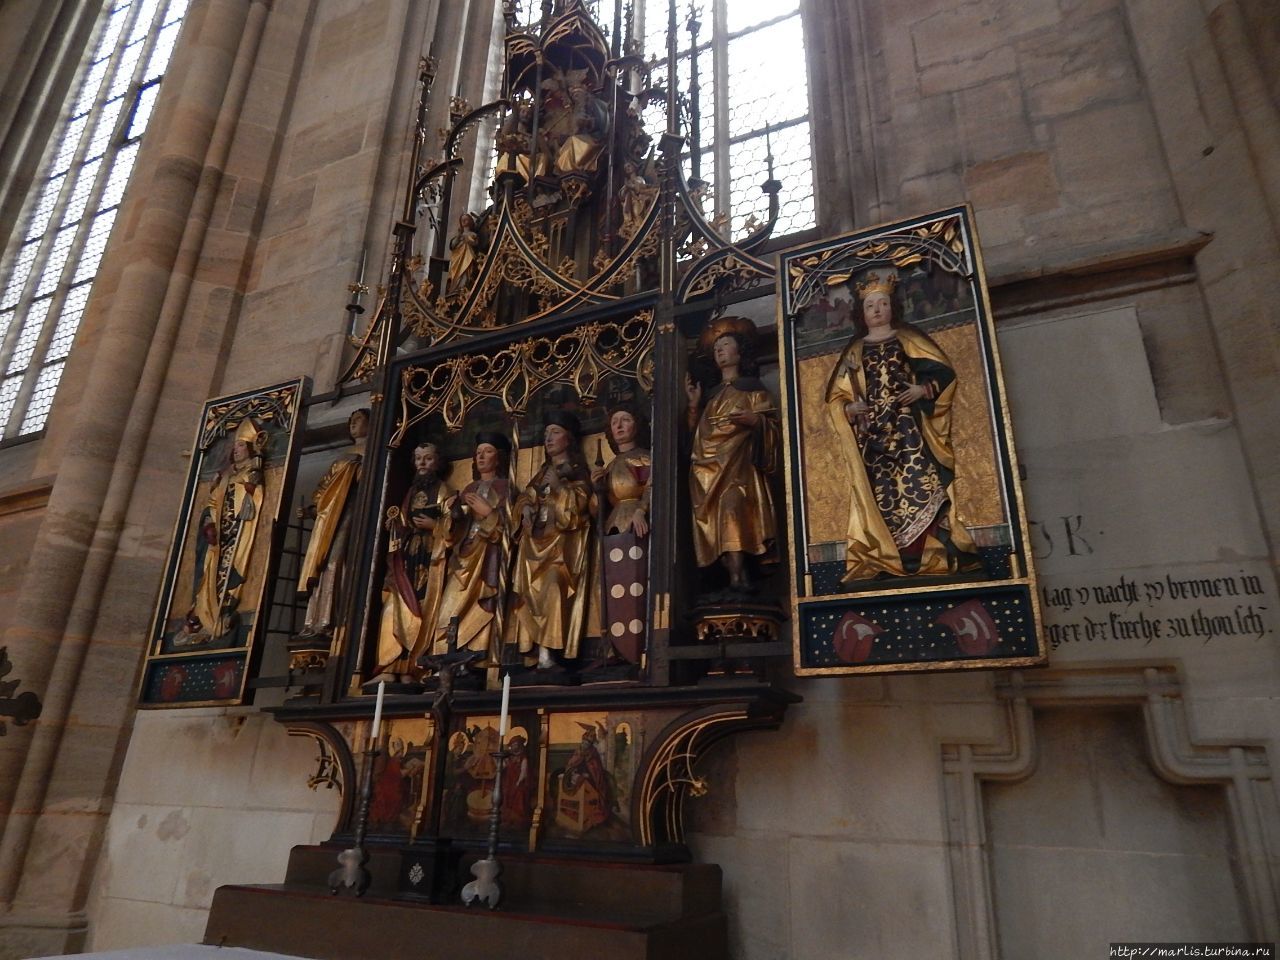 Dreifaltigkeitsaltar, 1470. Готический алтарь Святой троицы, создан в 1470-м году на деньги гильдии ткачей и сапожников Динкельсбюль, Германия